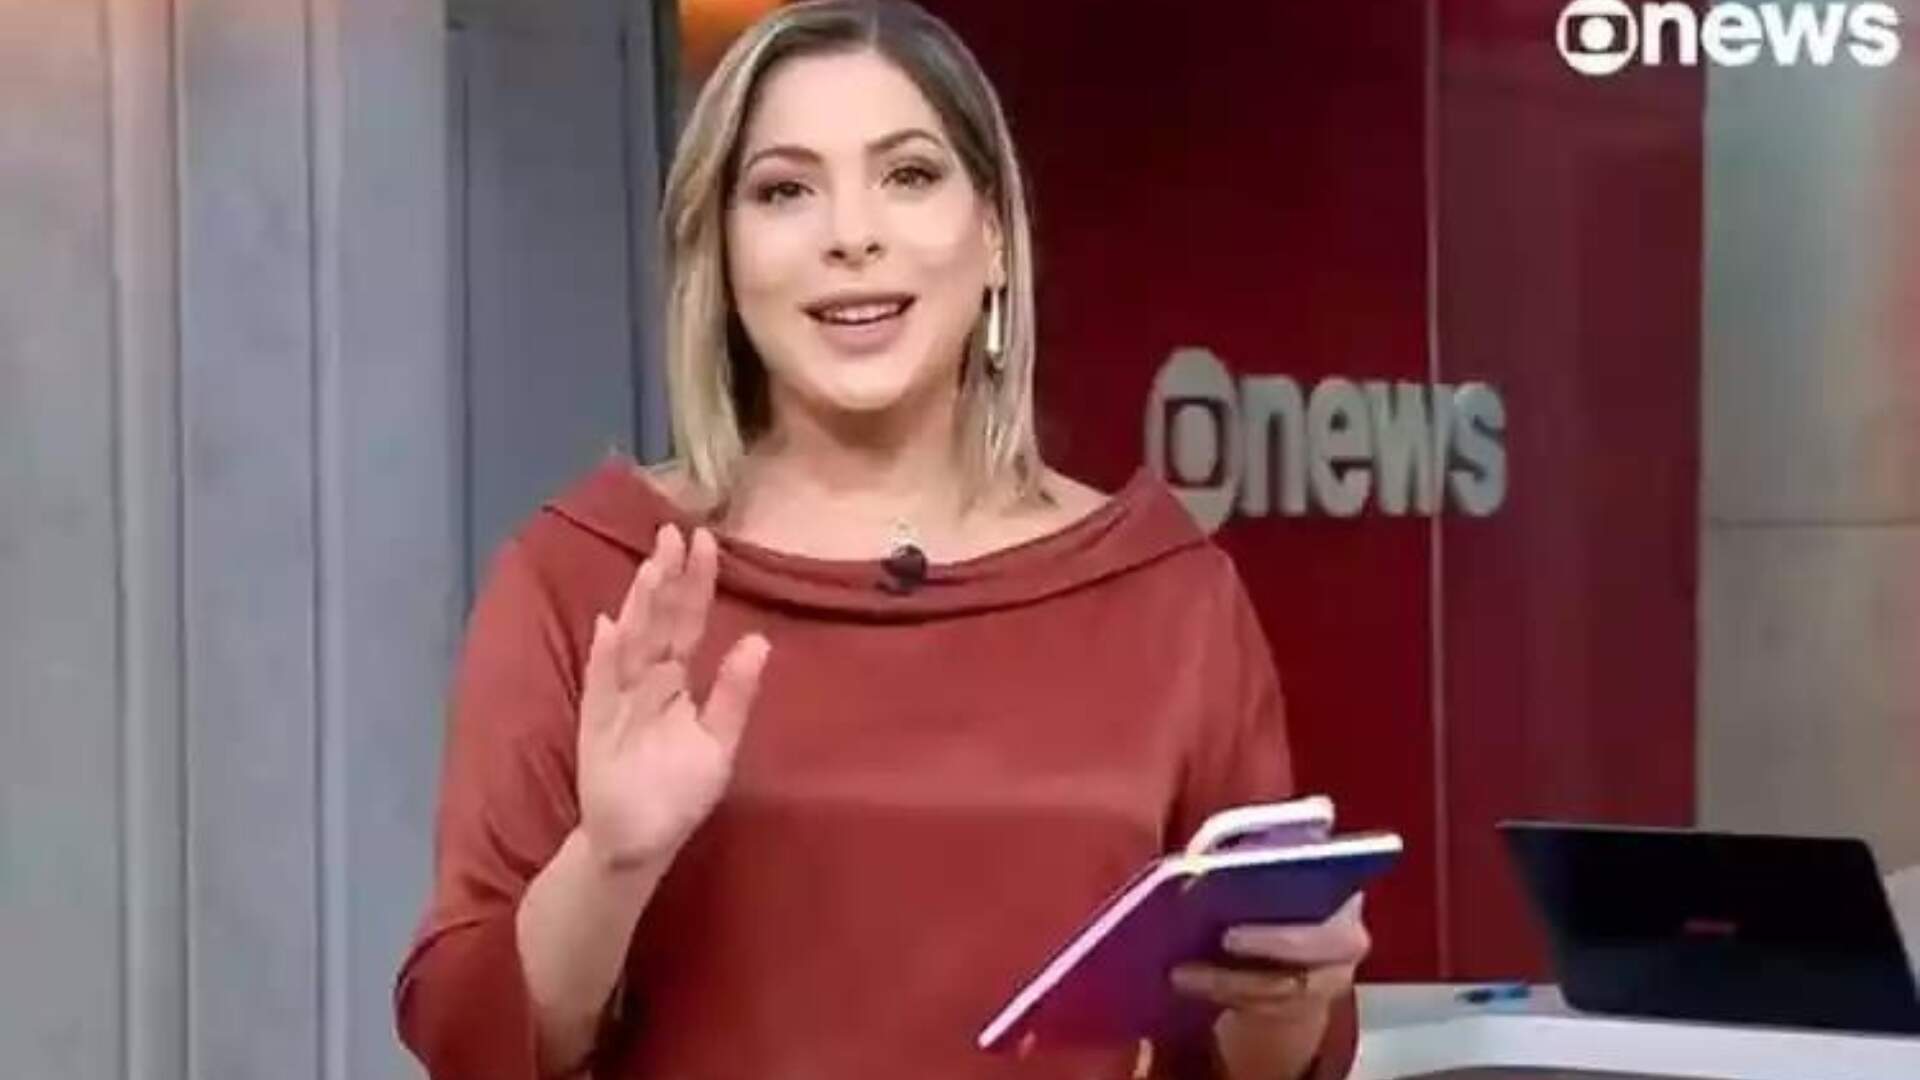 Nova jornalista queridinha da Globo comete gafe em primeiro programa ao vivo na emissora - Metropolitana FM